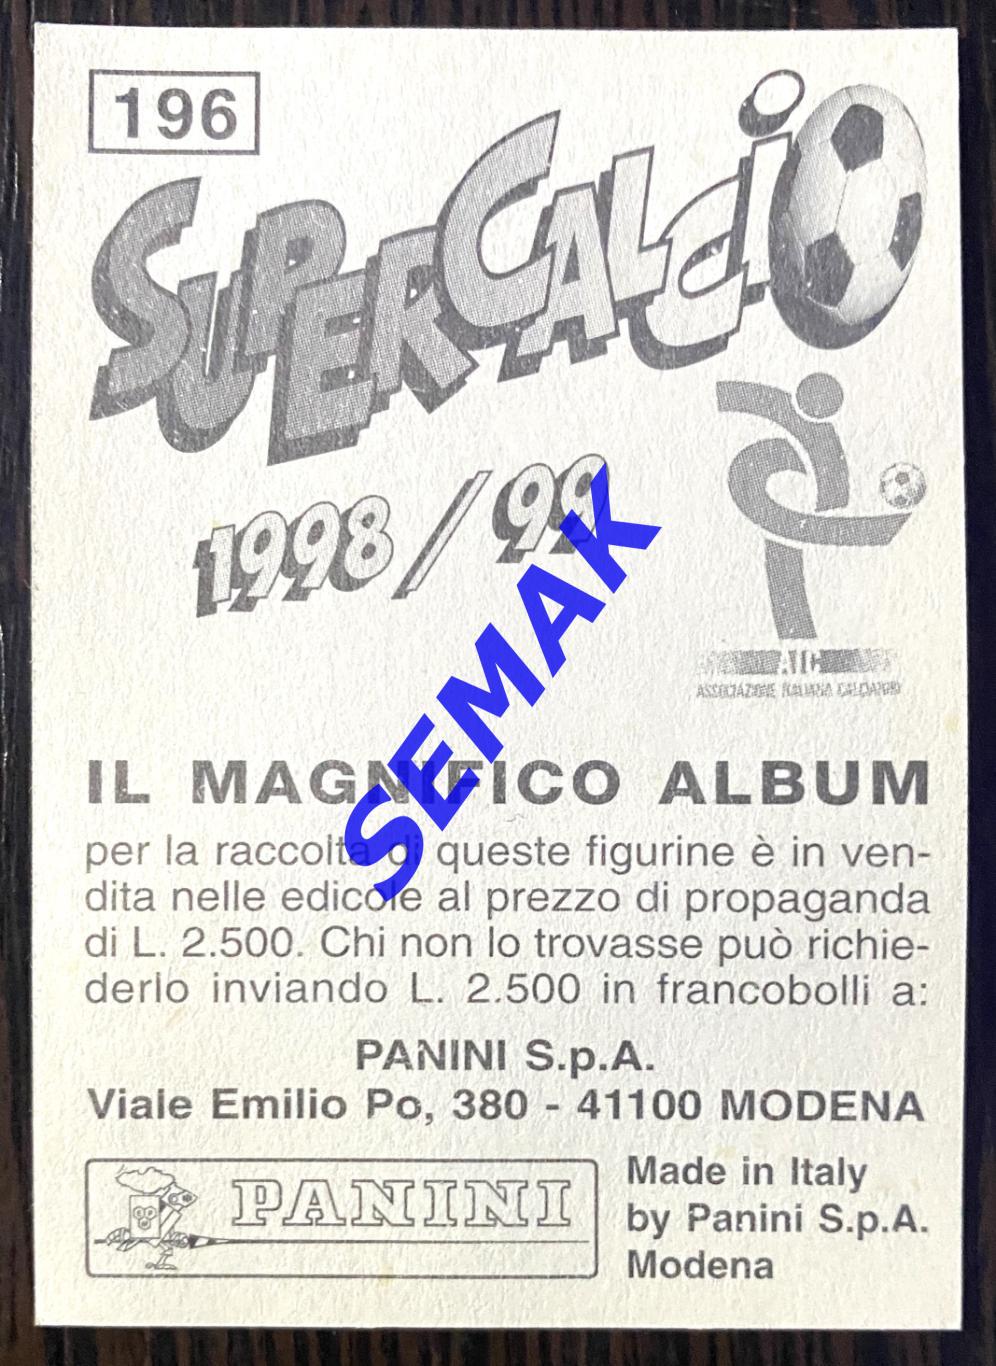 Панини - Panini. стикеры-наклейки №-196 Супер-Кальчо 1998/1999. 1